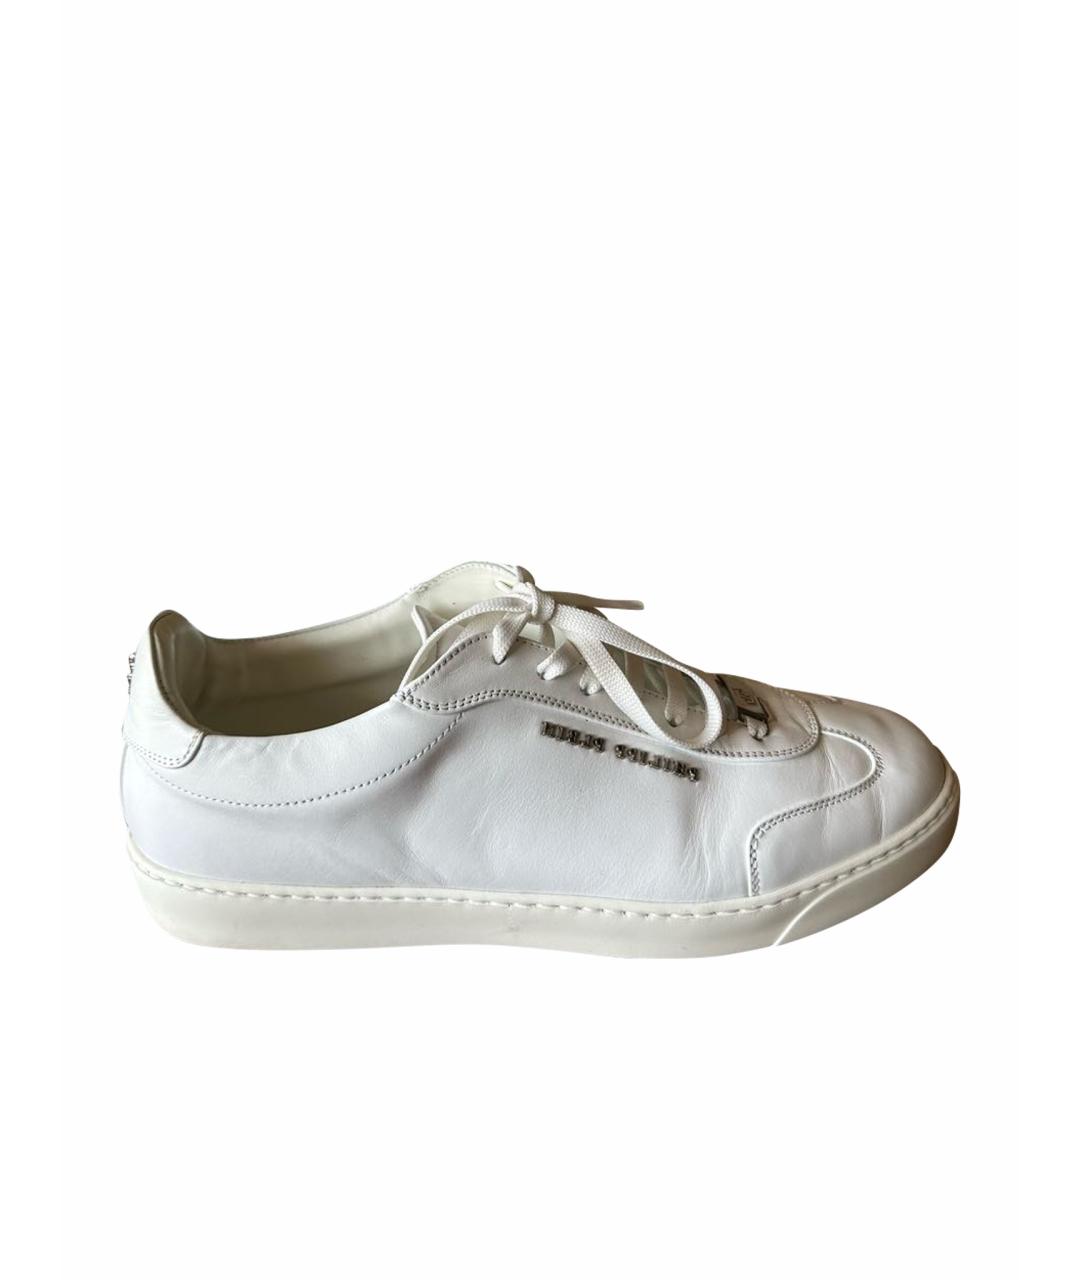 PHILIPP PLEIN Белые кожаные низкие кроссовки / кеды, фото 1